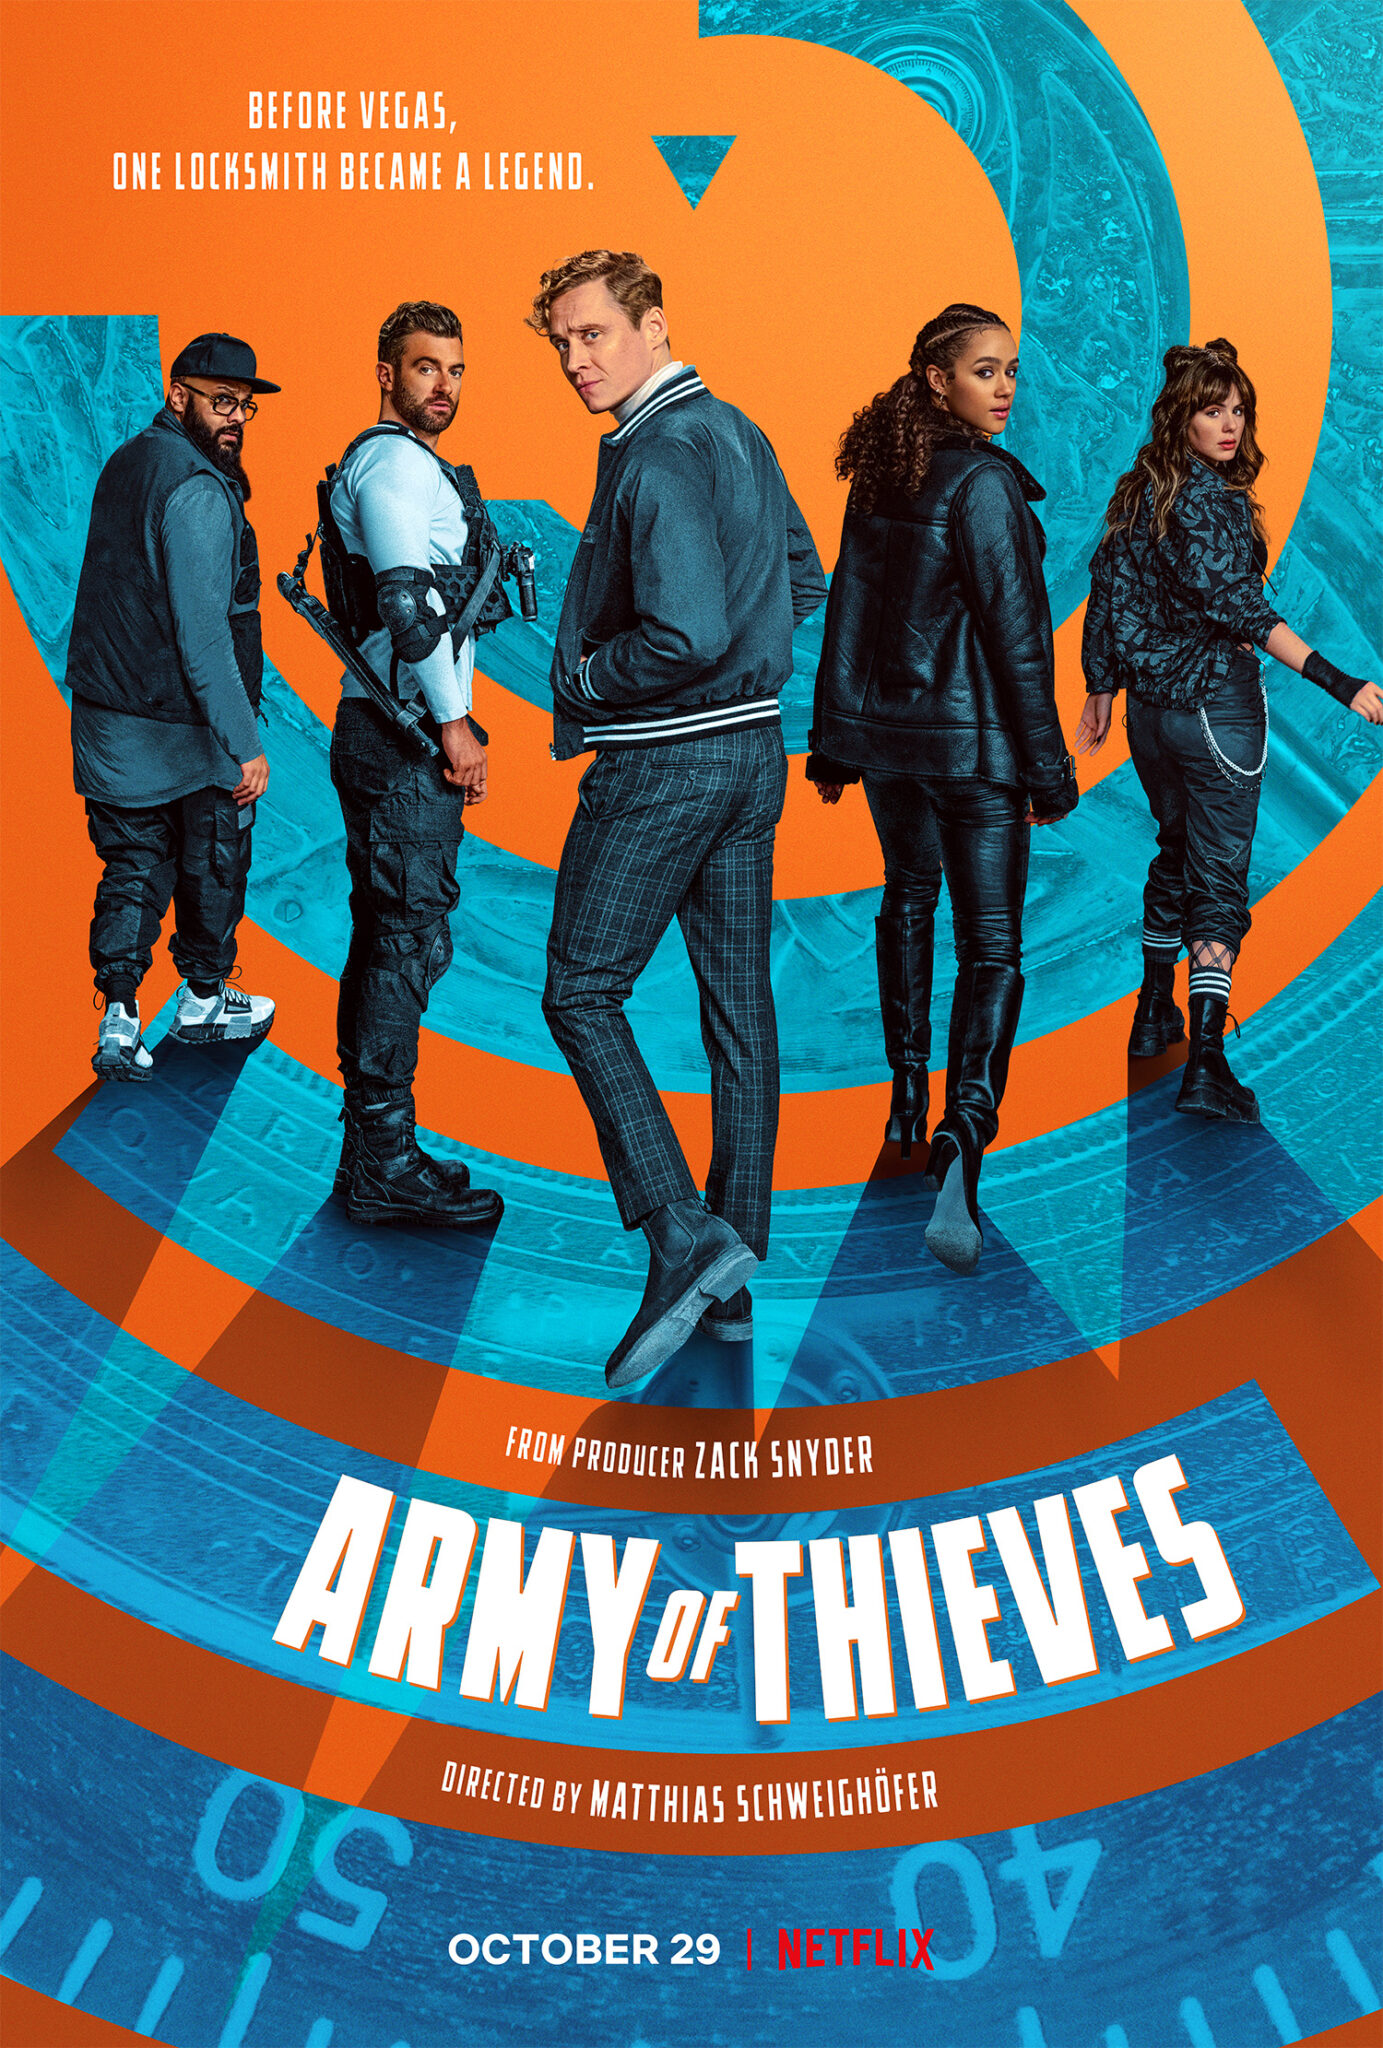 Das Plakat zu Army of Thieves zeigt die Mitglieder der Diebesbande vor einem blau-orangefarbenen Hintergrund, der einen stilisierten Safe darstellen soll.